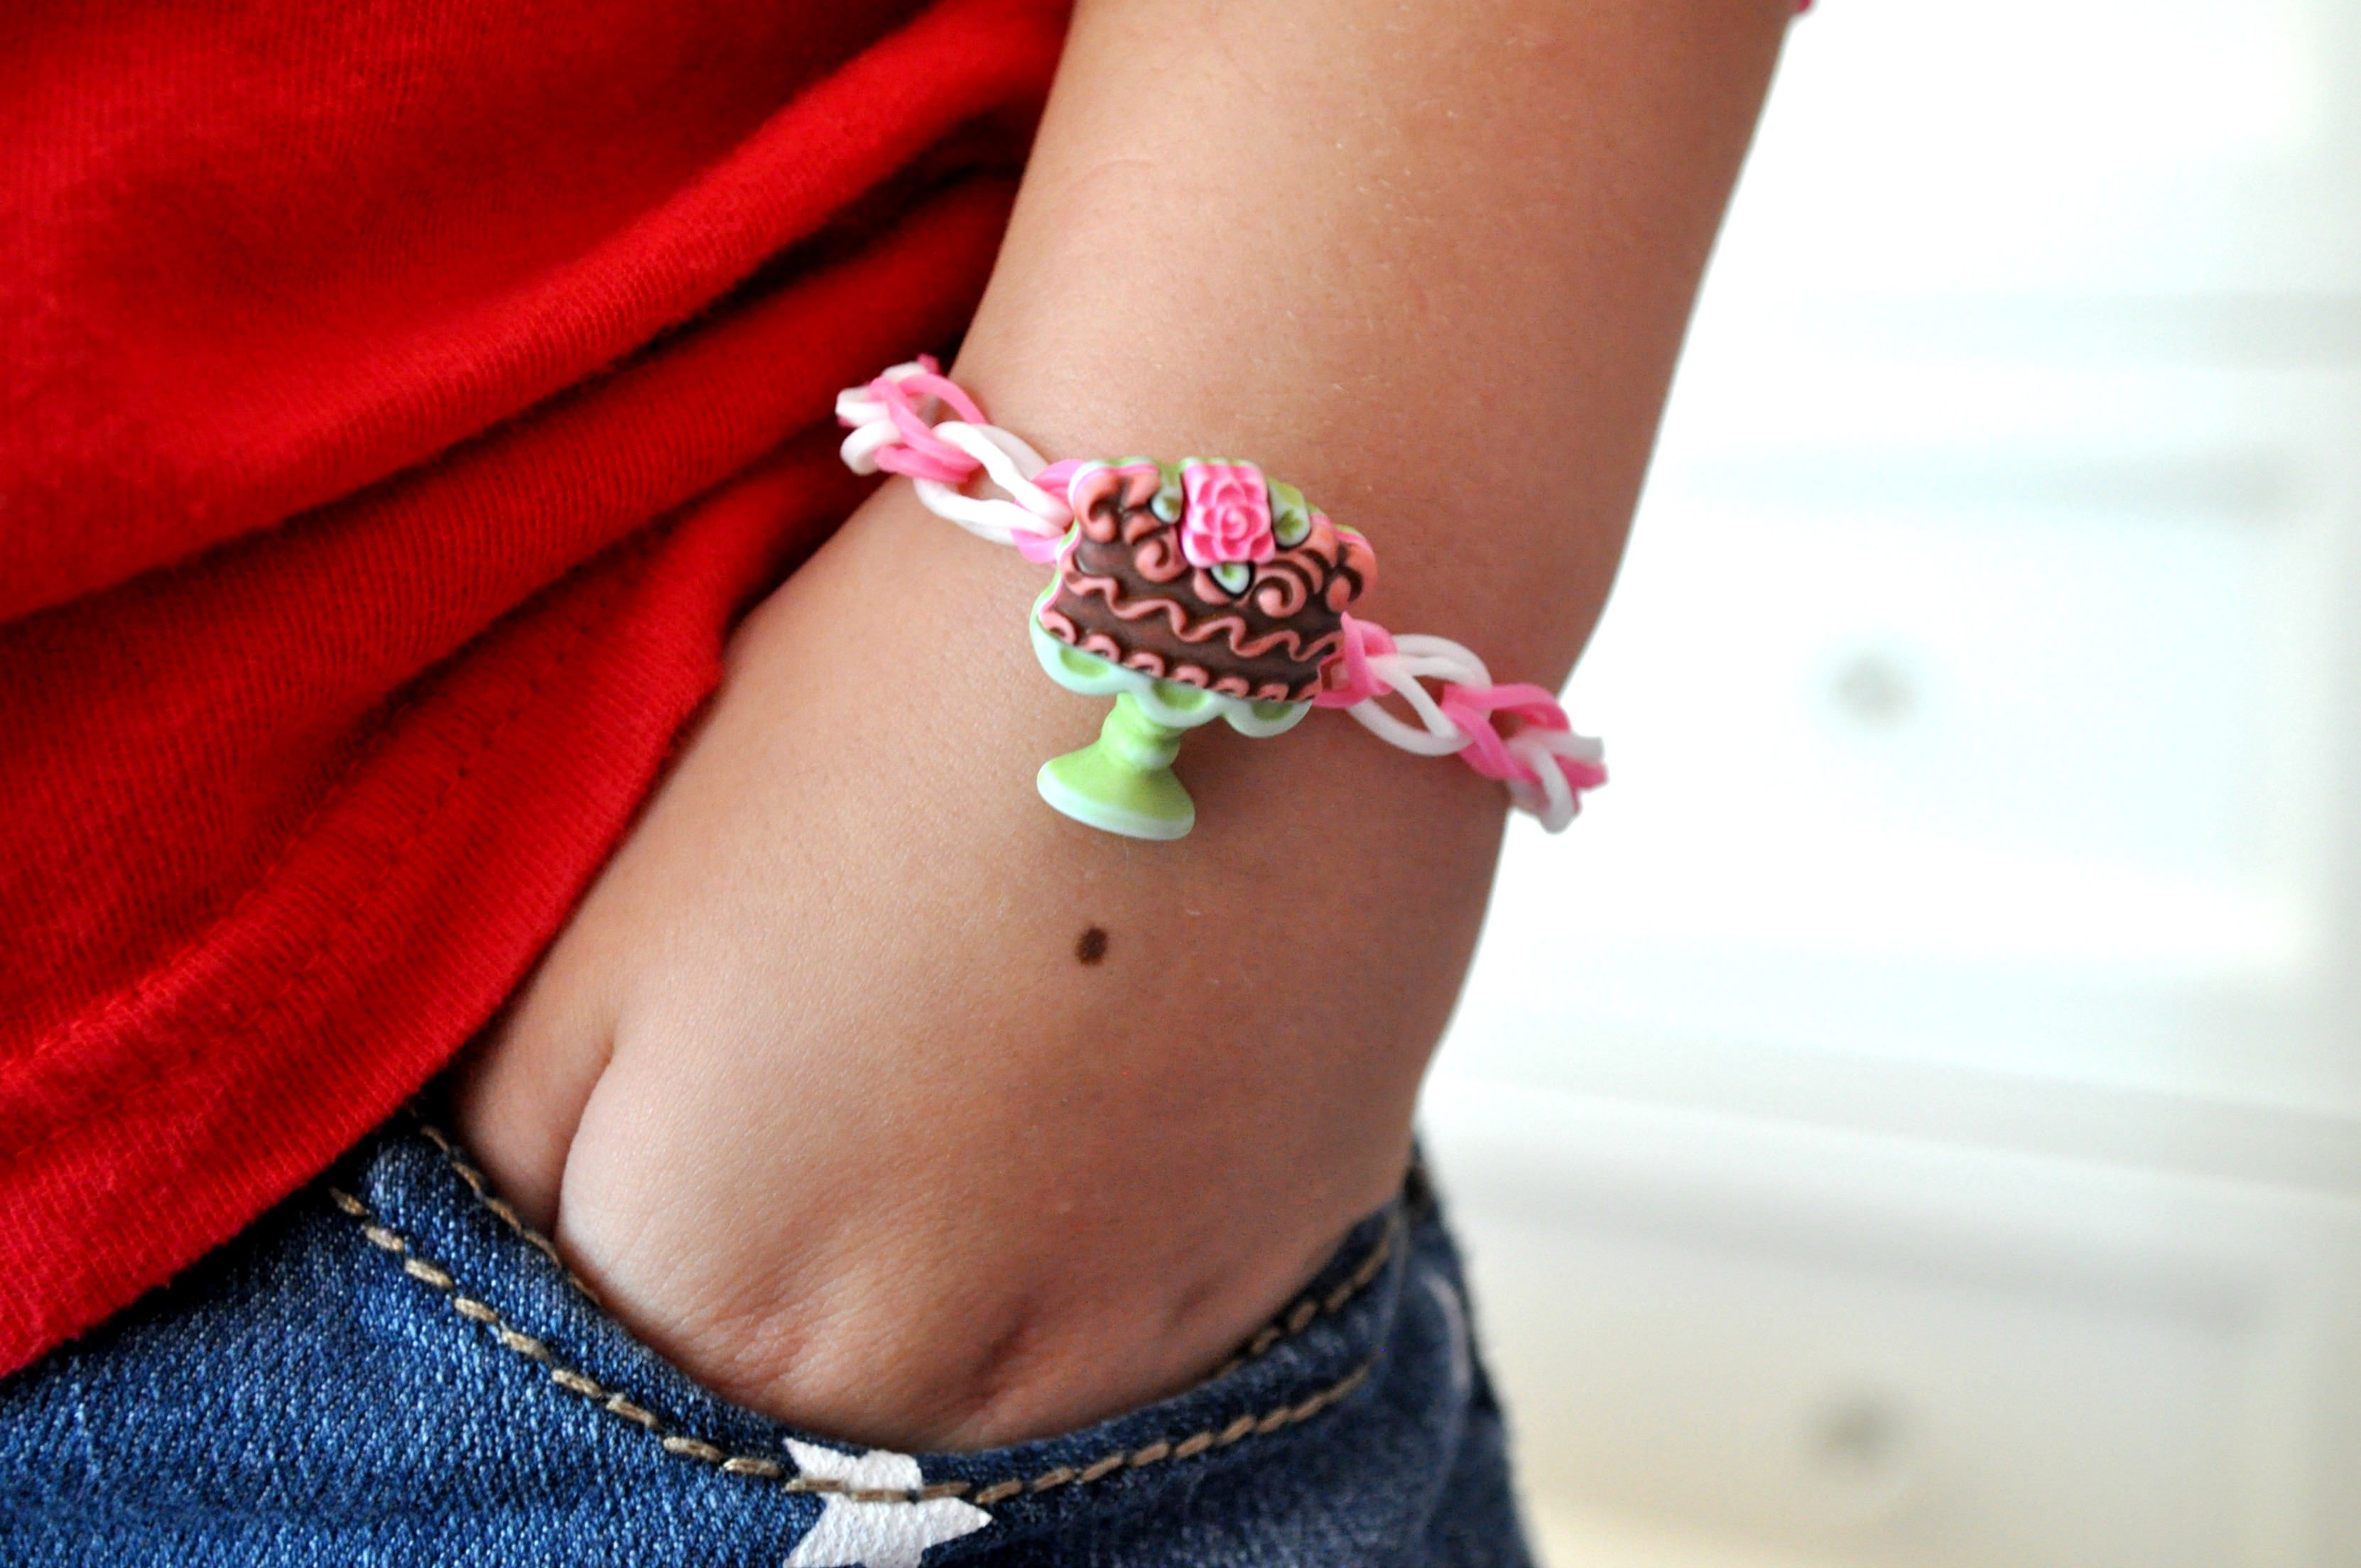 FUN LOOM Rubber Bands Bracelet Making Kit Kids Silicone Bands Bracelets  Crafts